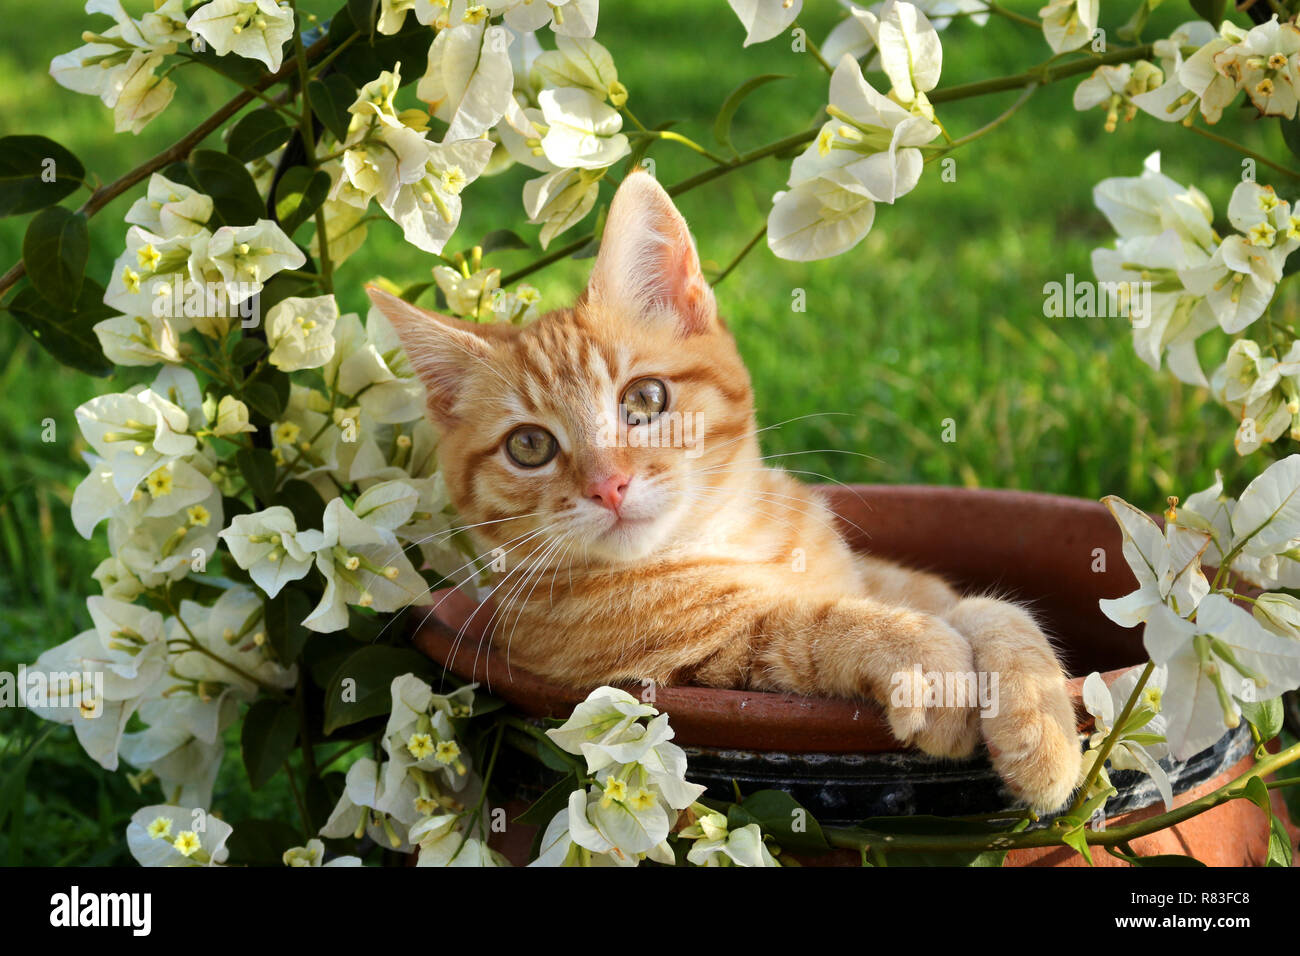 Jeune chat de gingembre, 3 mois, couché dans un pot de fleurs avec des bougainvilliers blanc Banque D'Images